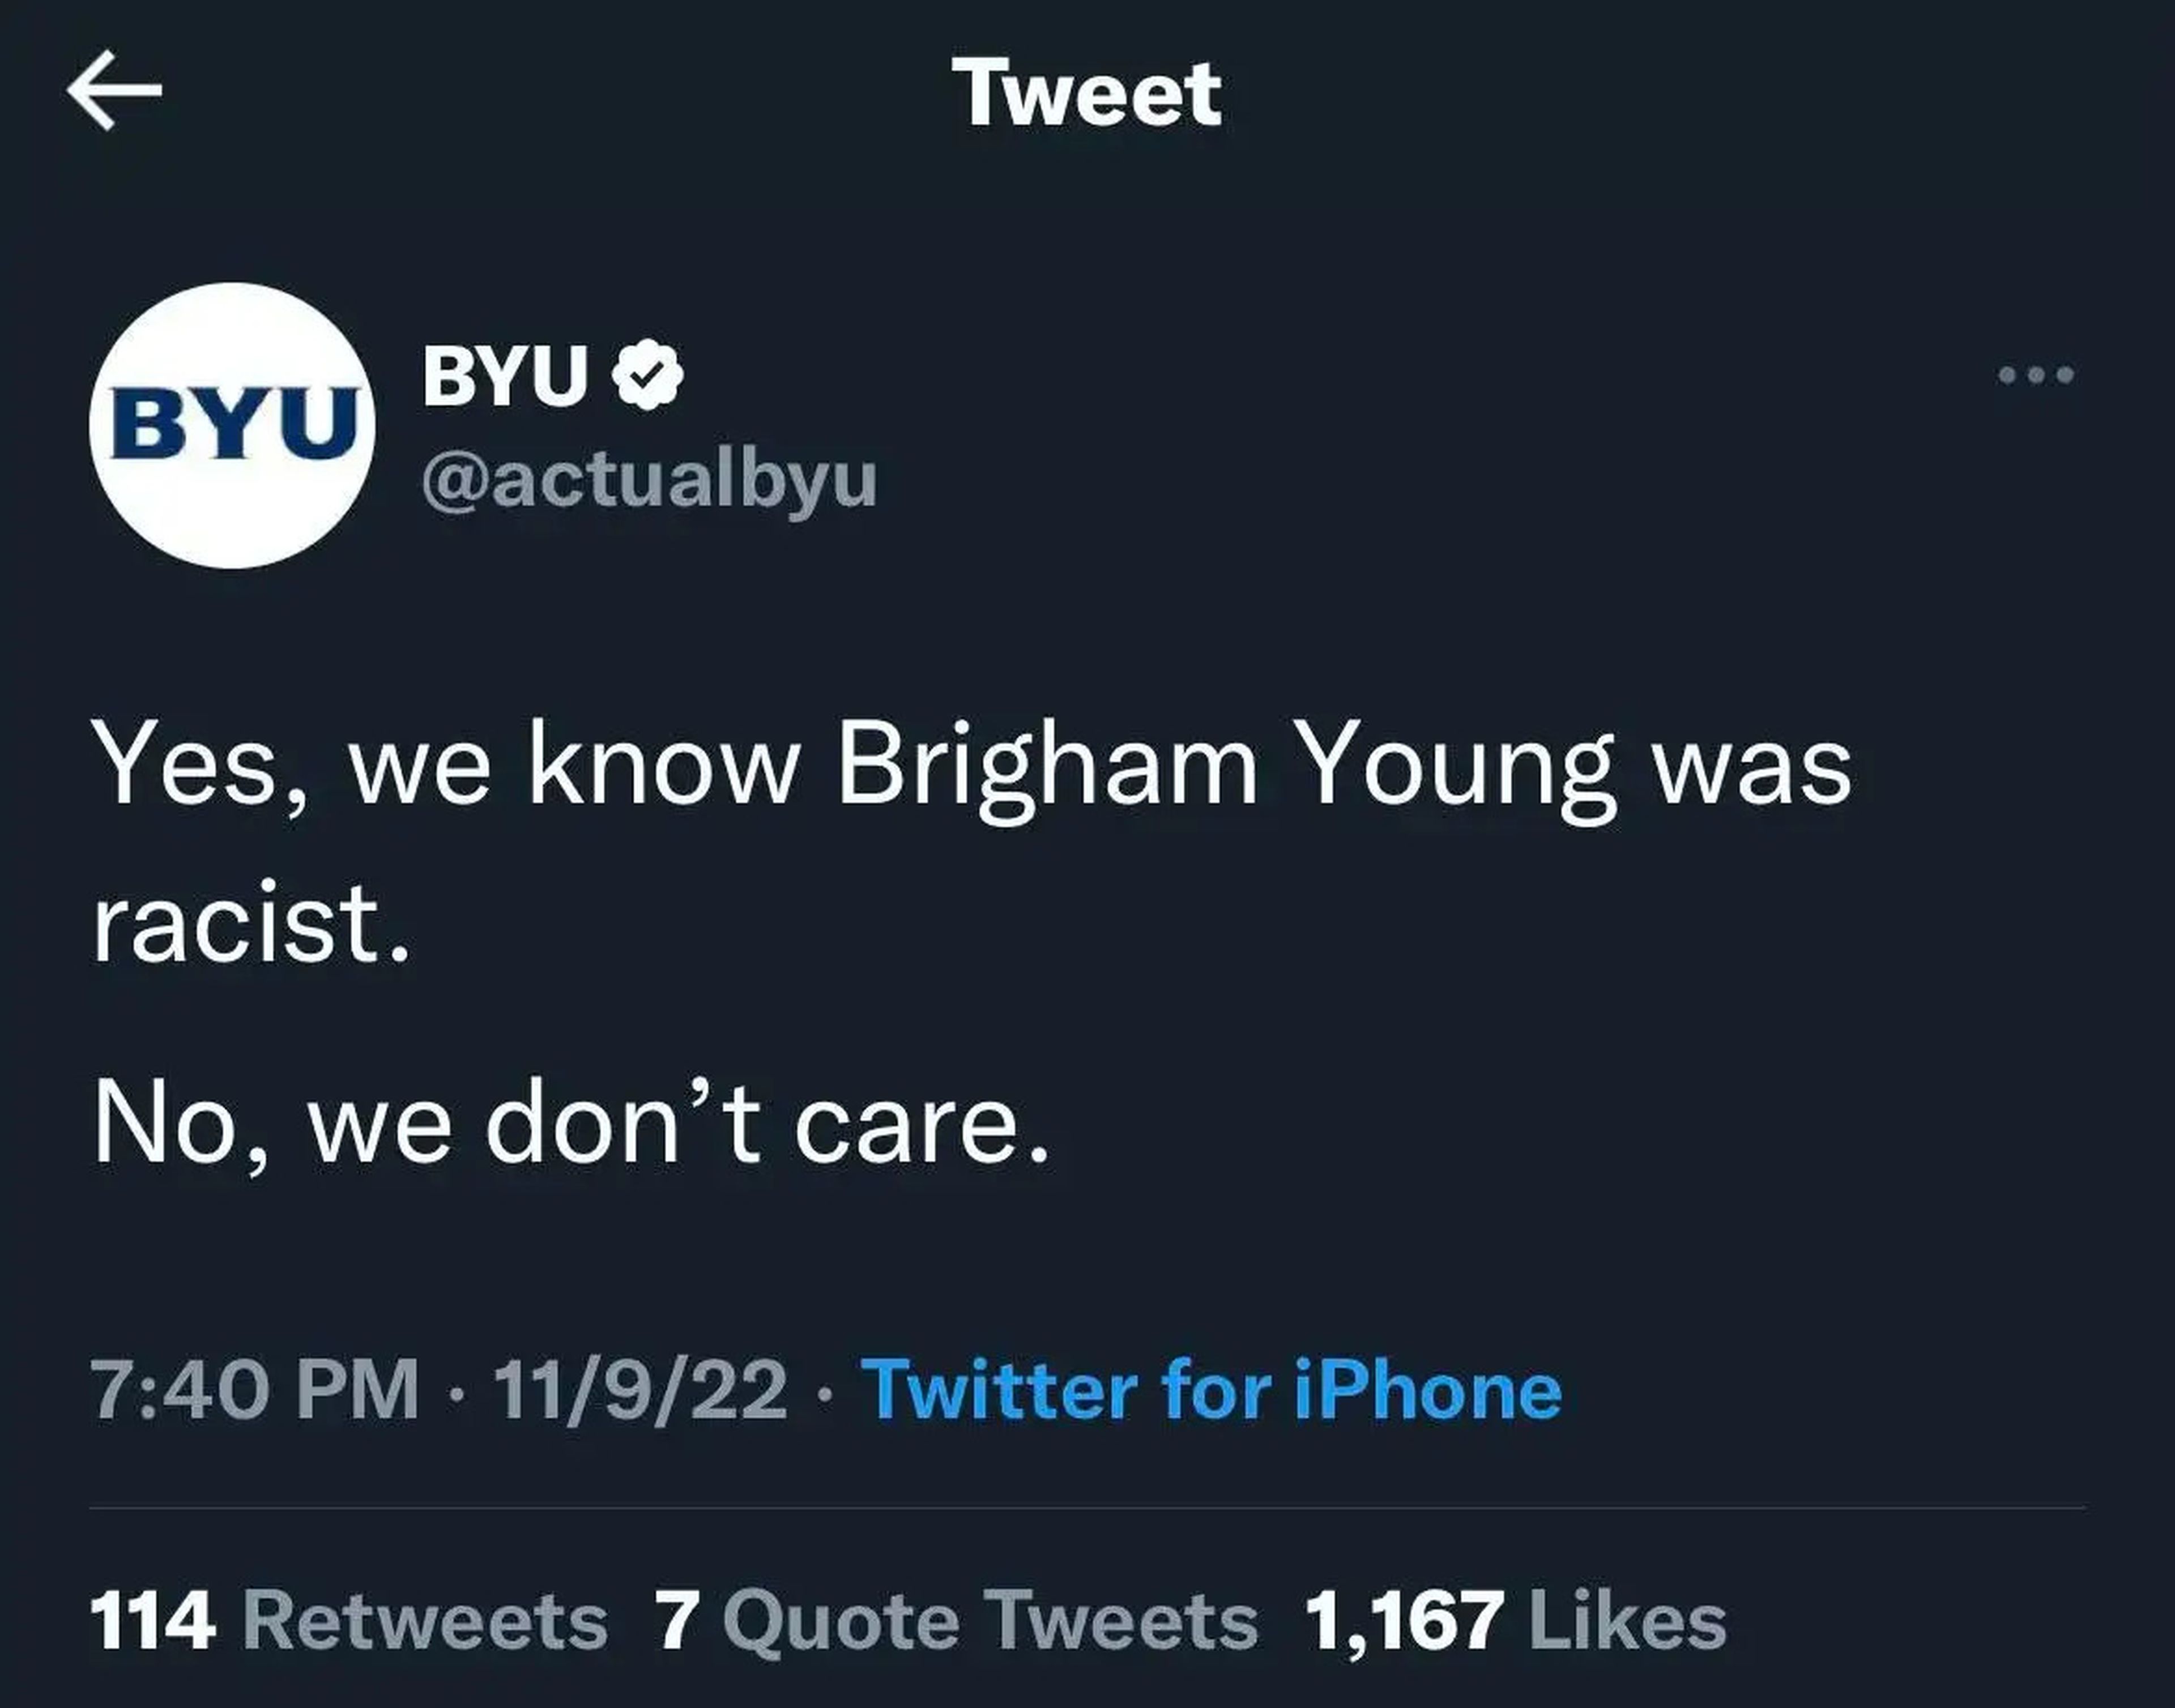 Tweet from BYU impersonator